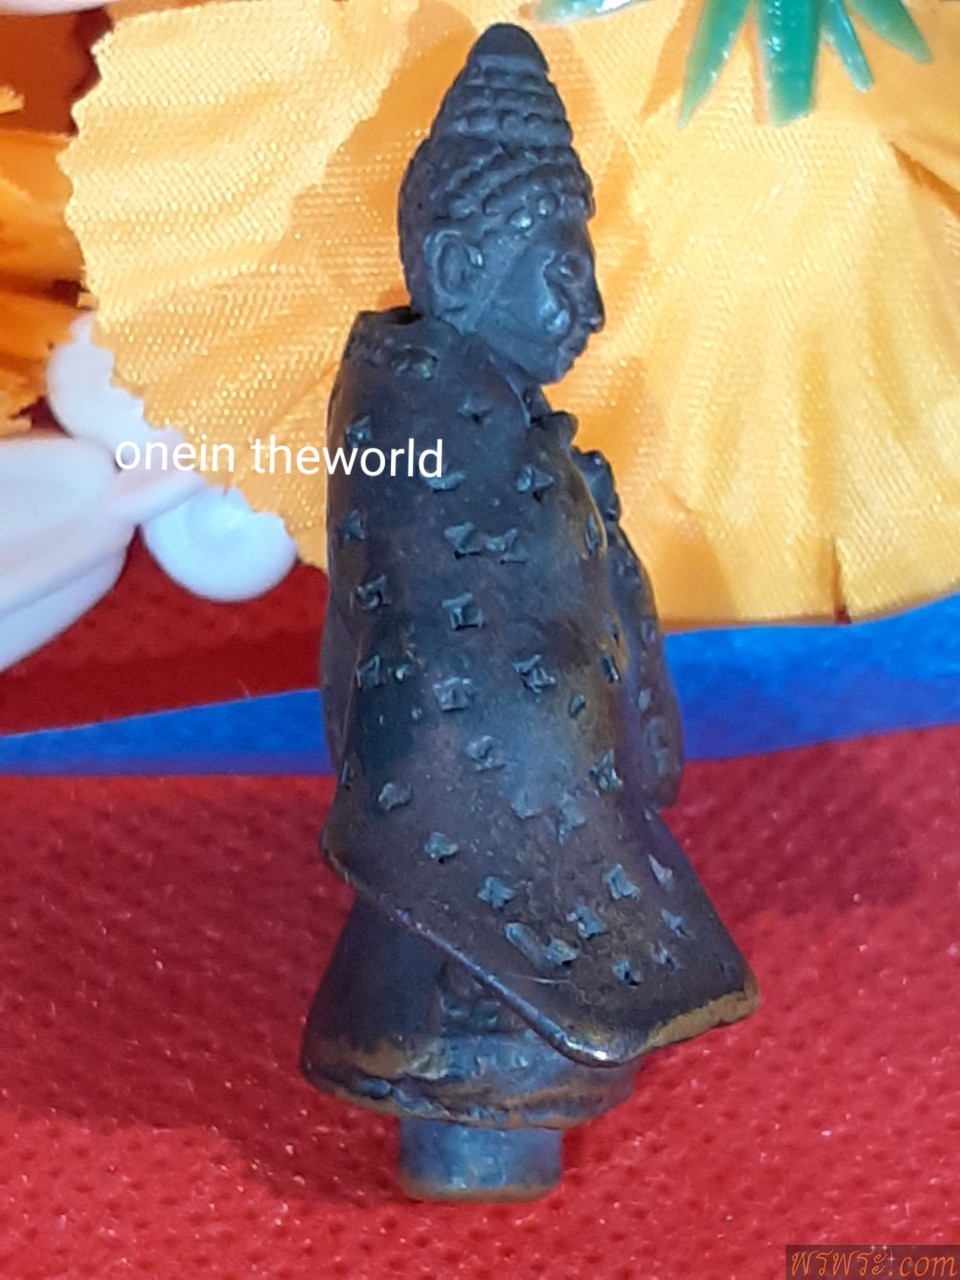 โชว์//พระกริ่ง ปวเรศ เครื่องทรงจีน ตอกลาย ปางประธานพร หล่อเต็มองค์ มีแกนช่อ พบเห็นน้อยองค์ เนื้อสัมฤทธิ์ พบ1องค์ ณ.18/06/2560Phra Kring Pawaret amulet, Chinese style, stamped pattern, posture of the blessing, full casting, with a bouquet of cores, rarely seen bronze